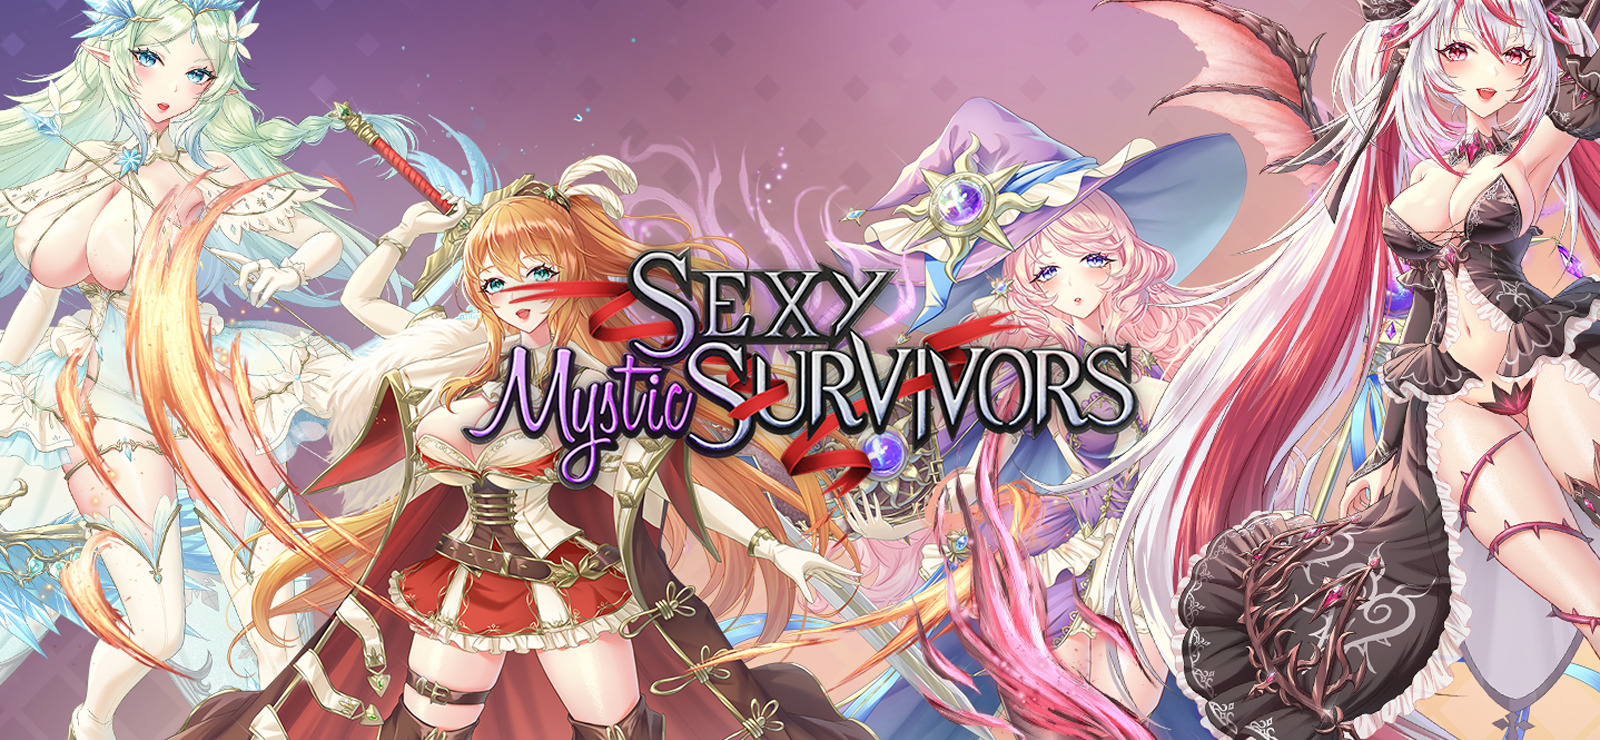 Sexy mystic survivors download